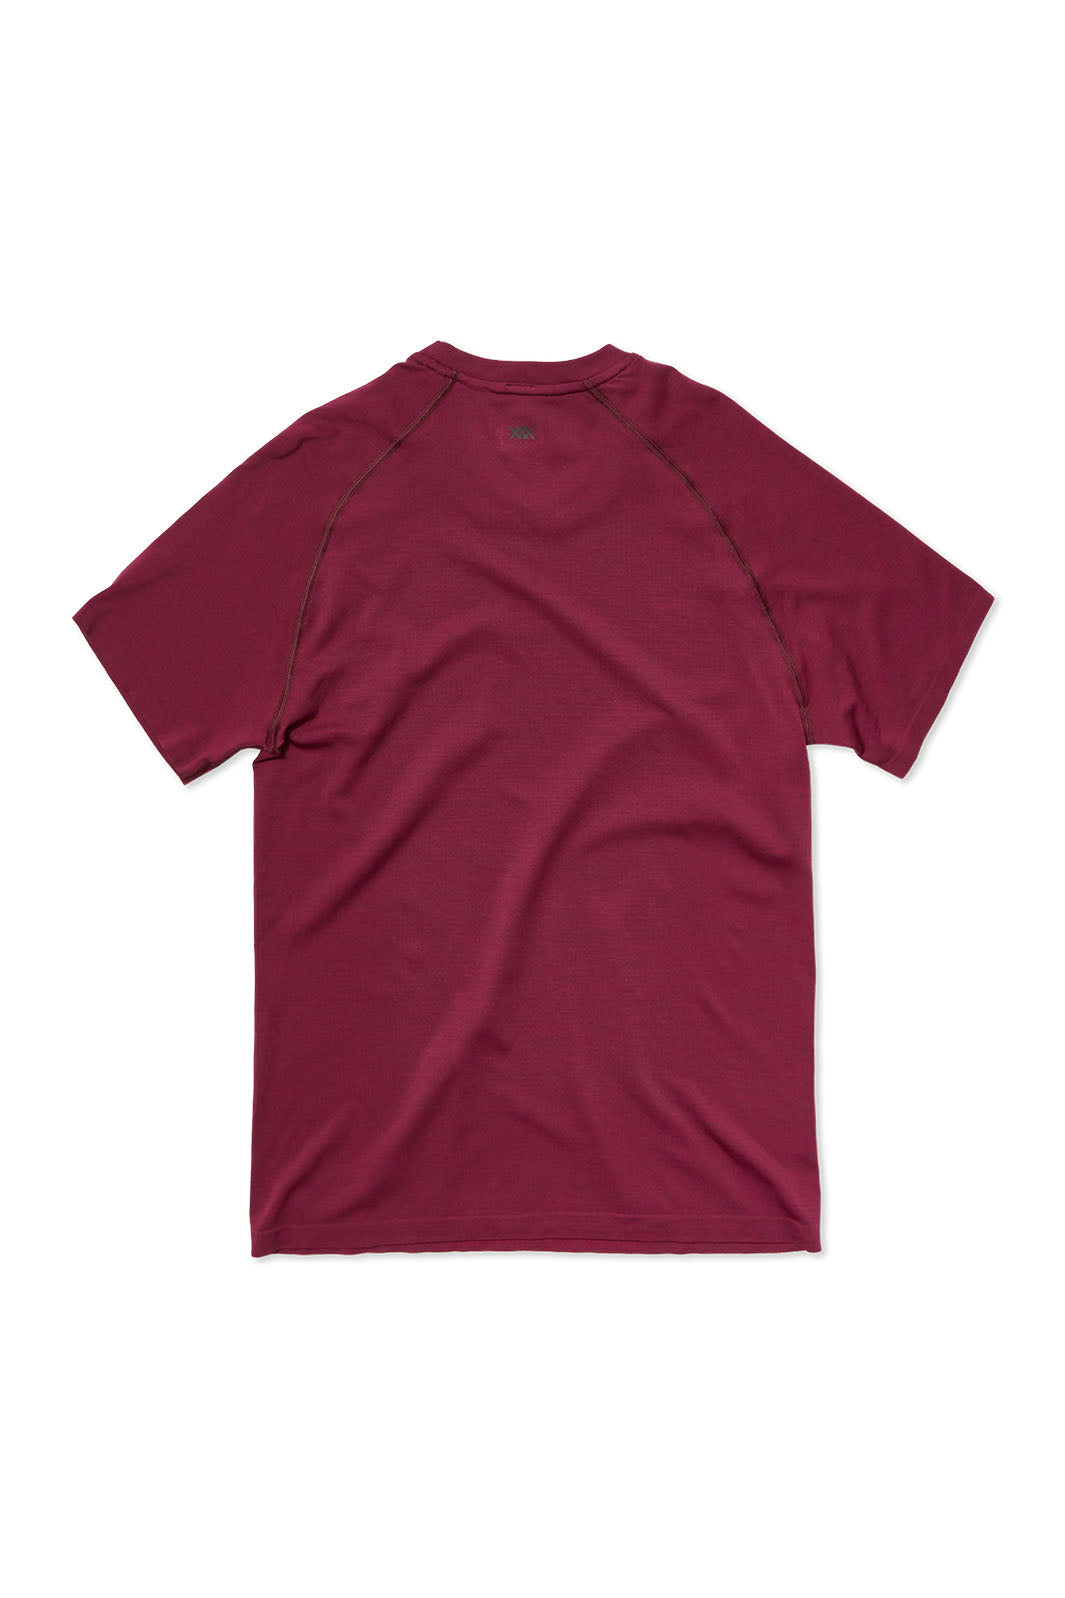 Reign Tech Short Sleeve T-Shirt - Deep Plum